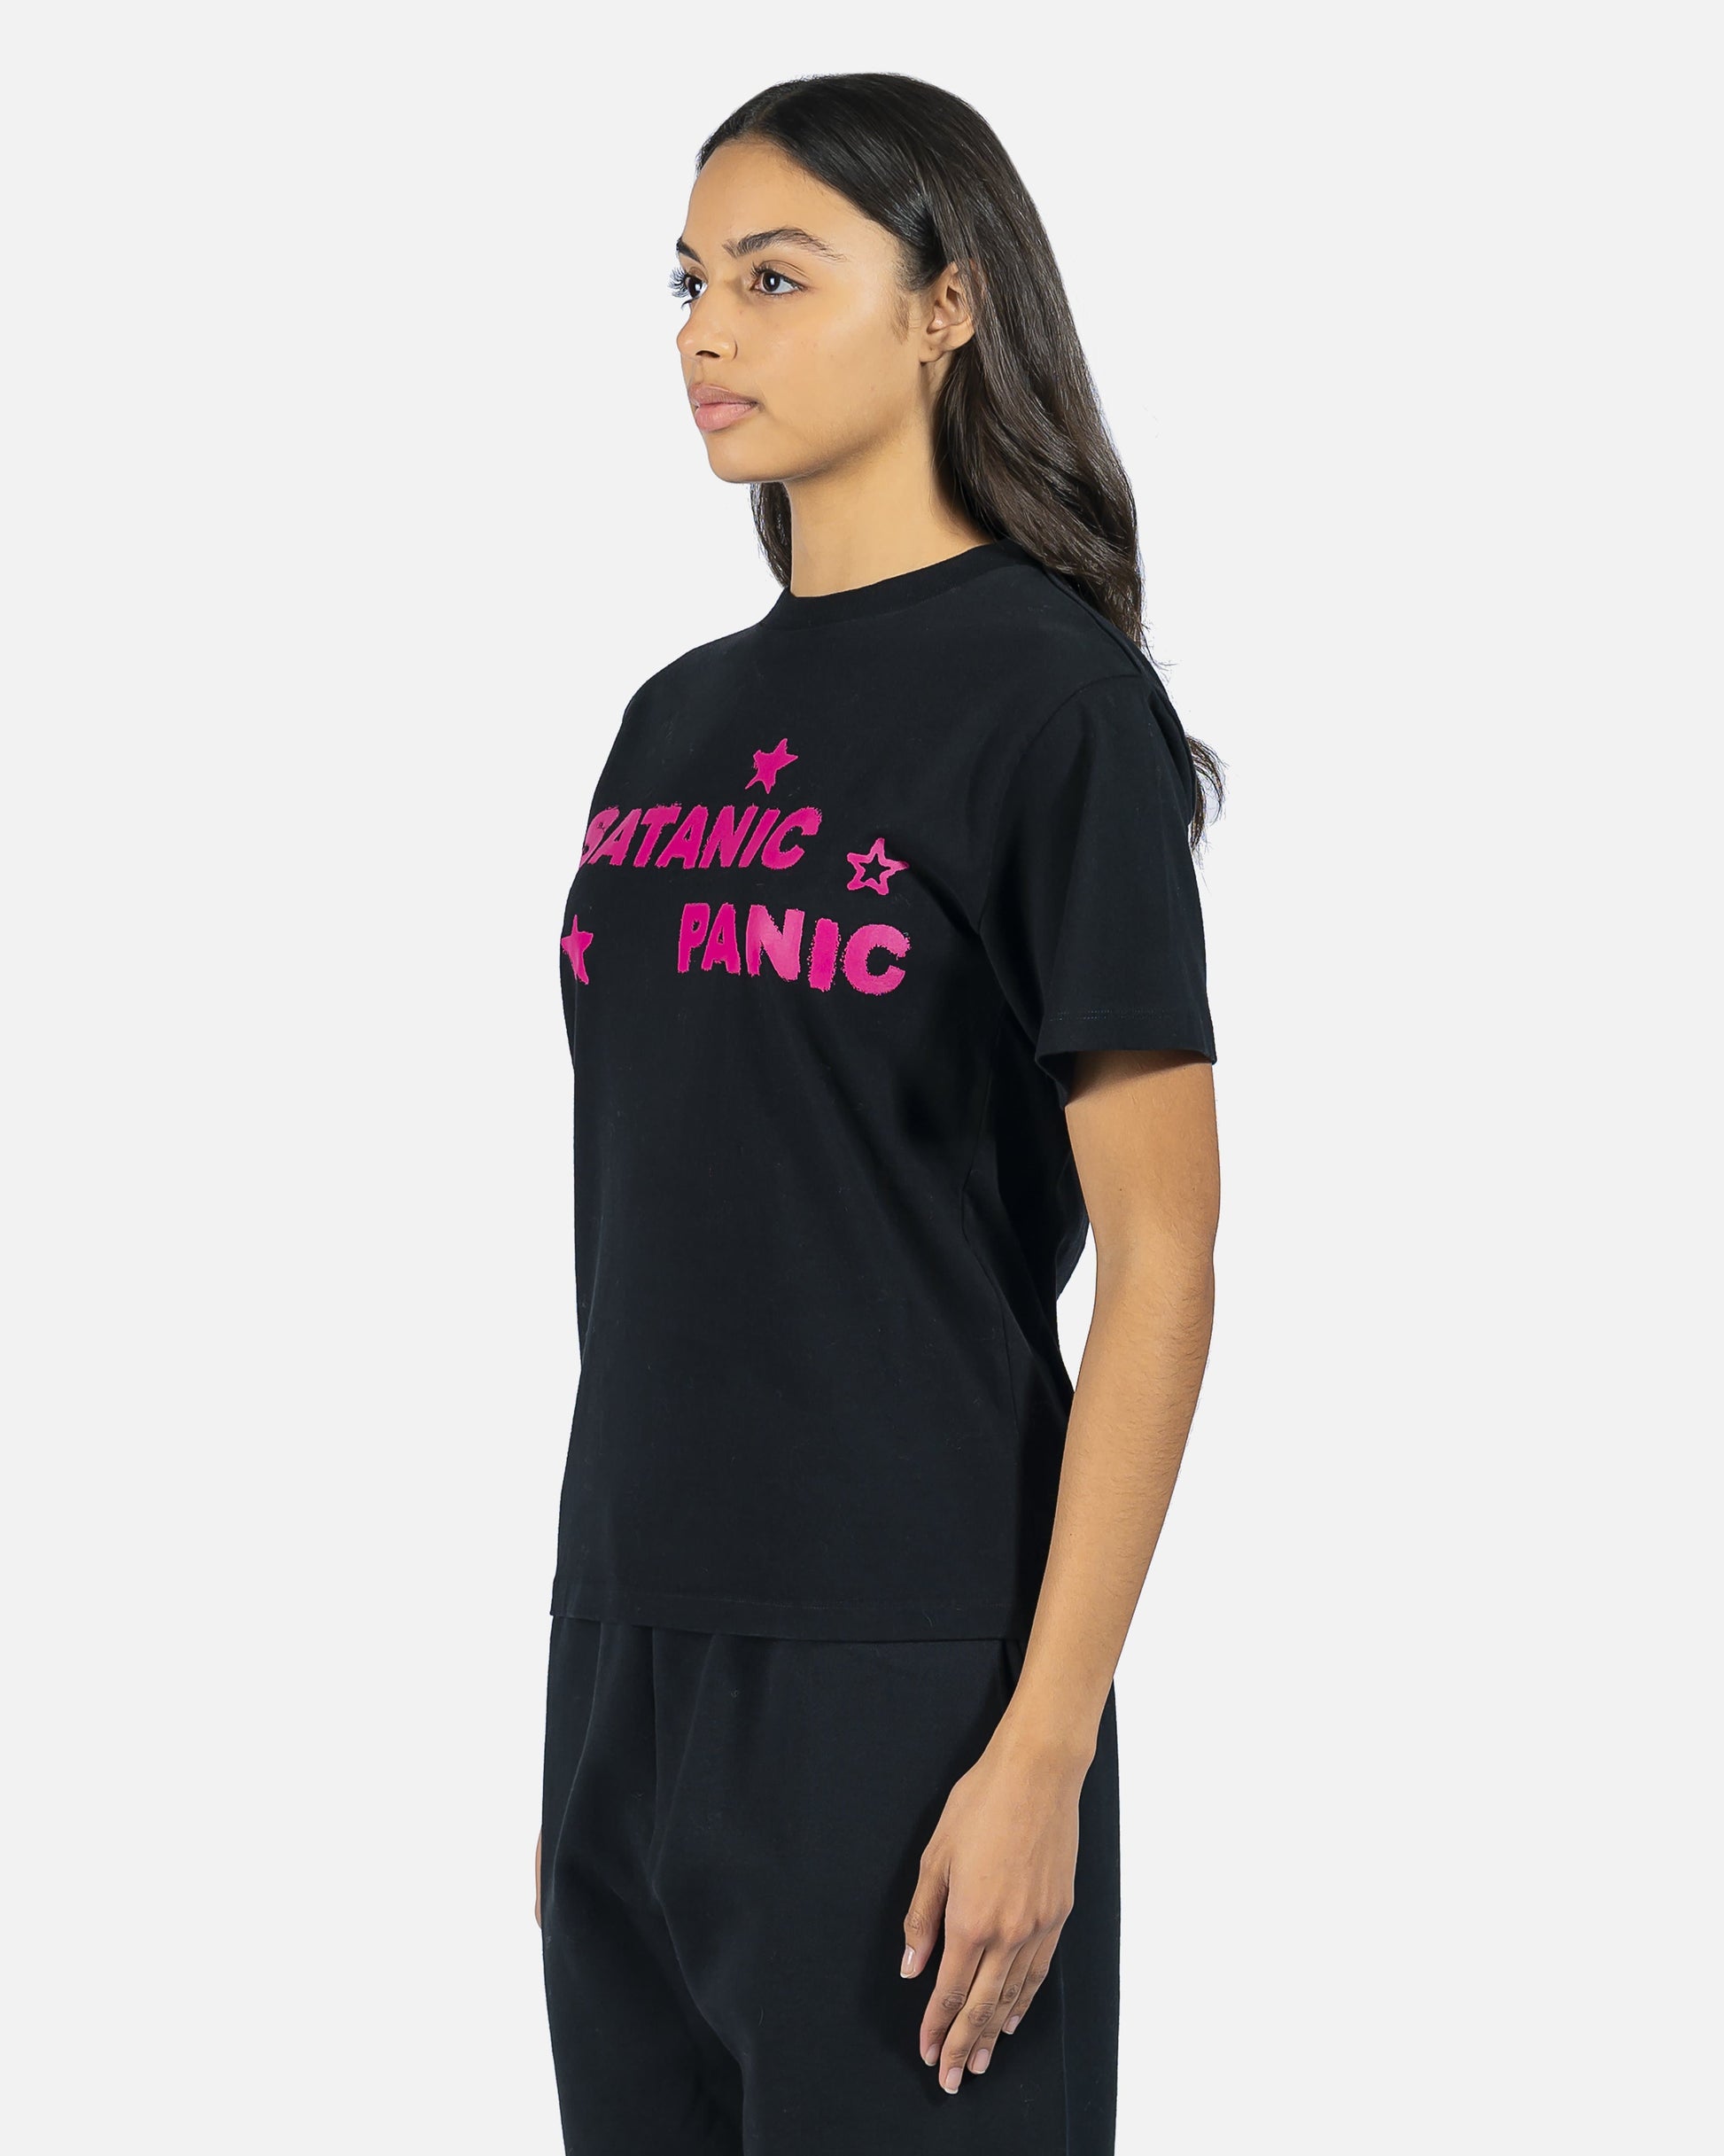 Aries Women T-Shirts Satanic Panic Tee in Black